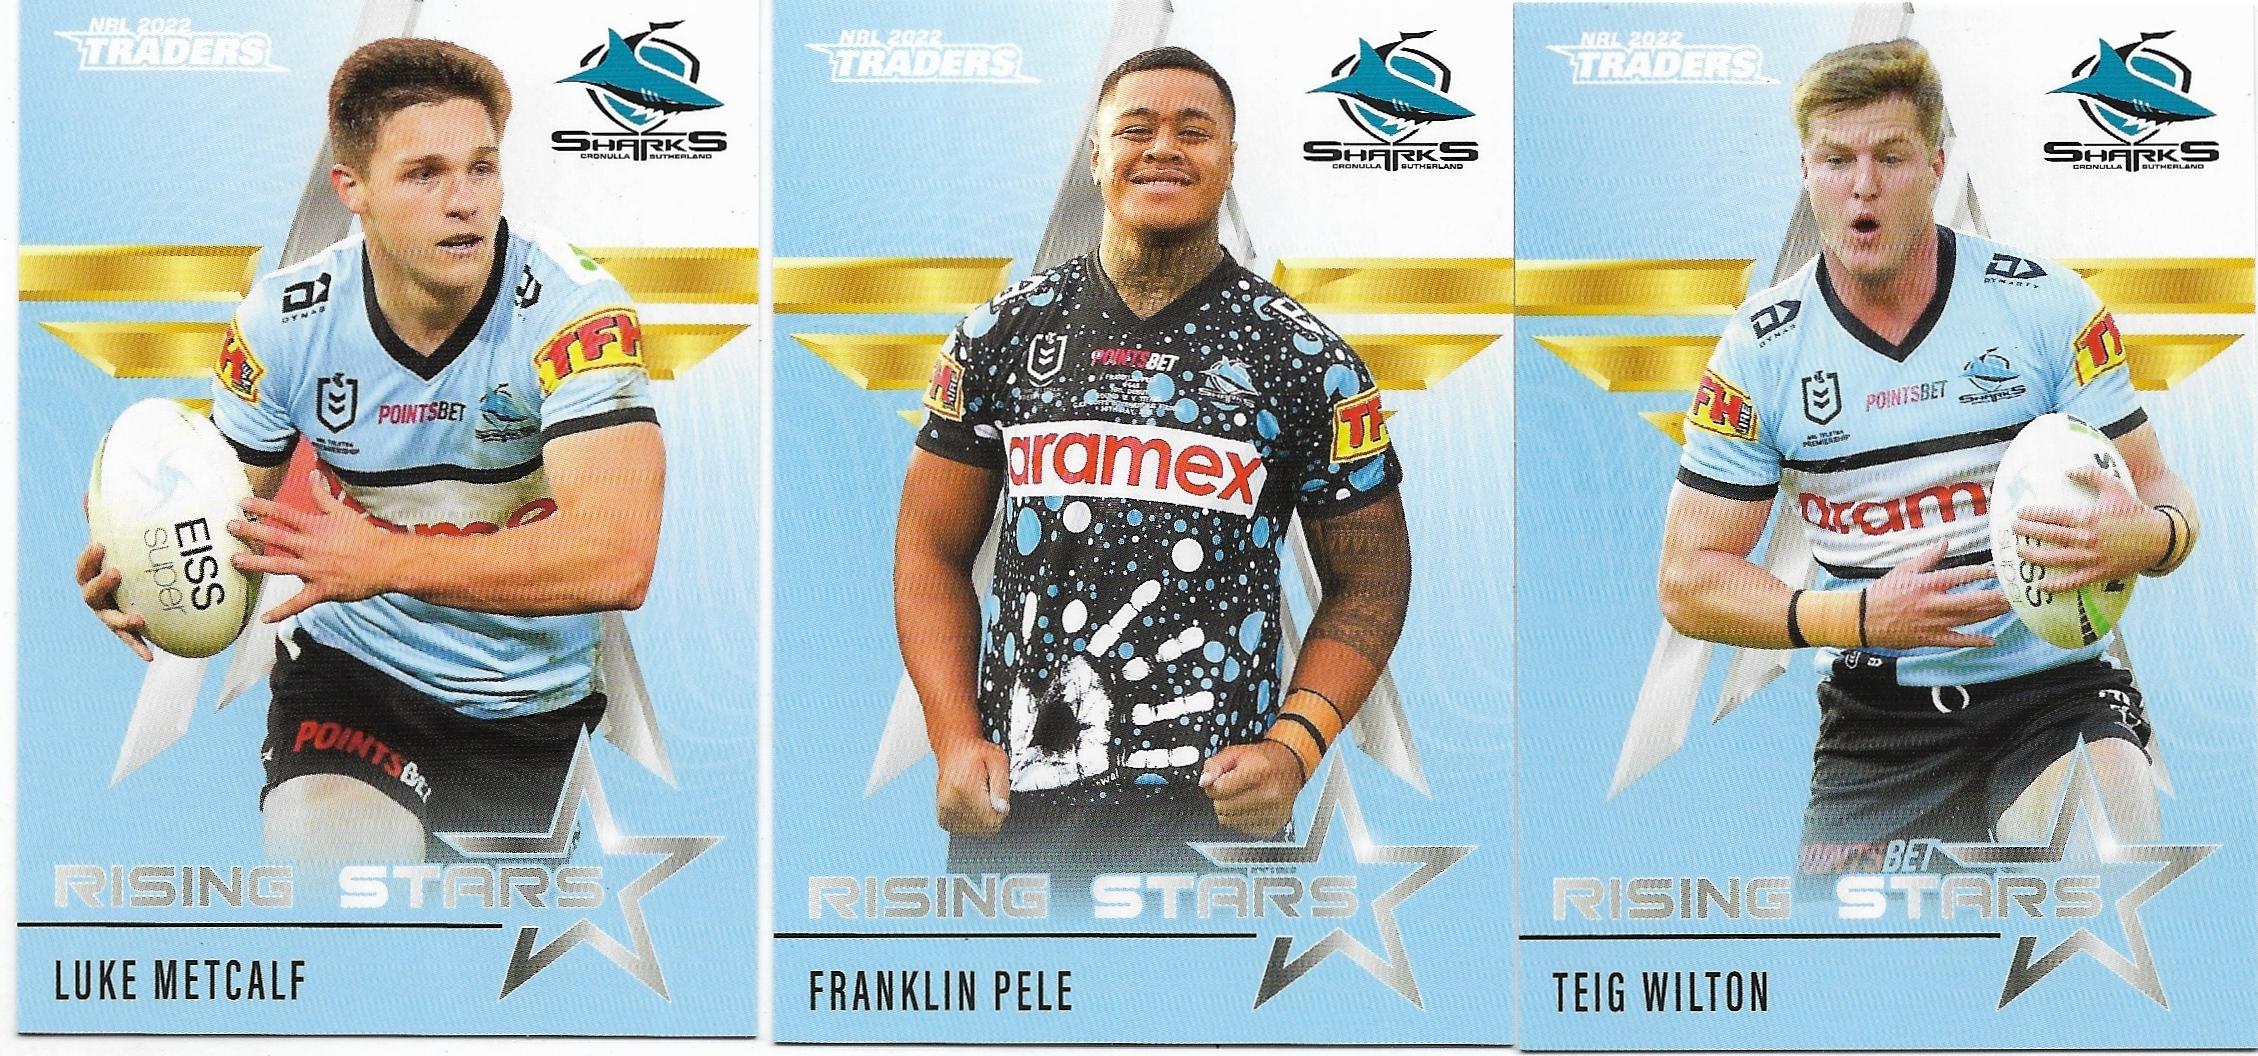 2022 Nrl Traders Rising Stars 3 Card Team Set – Sharks